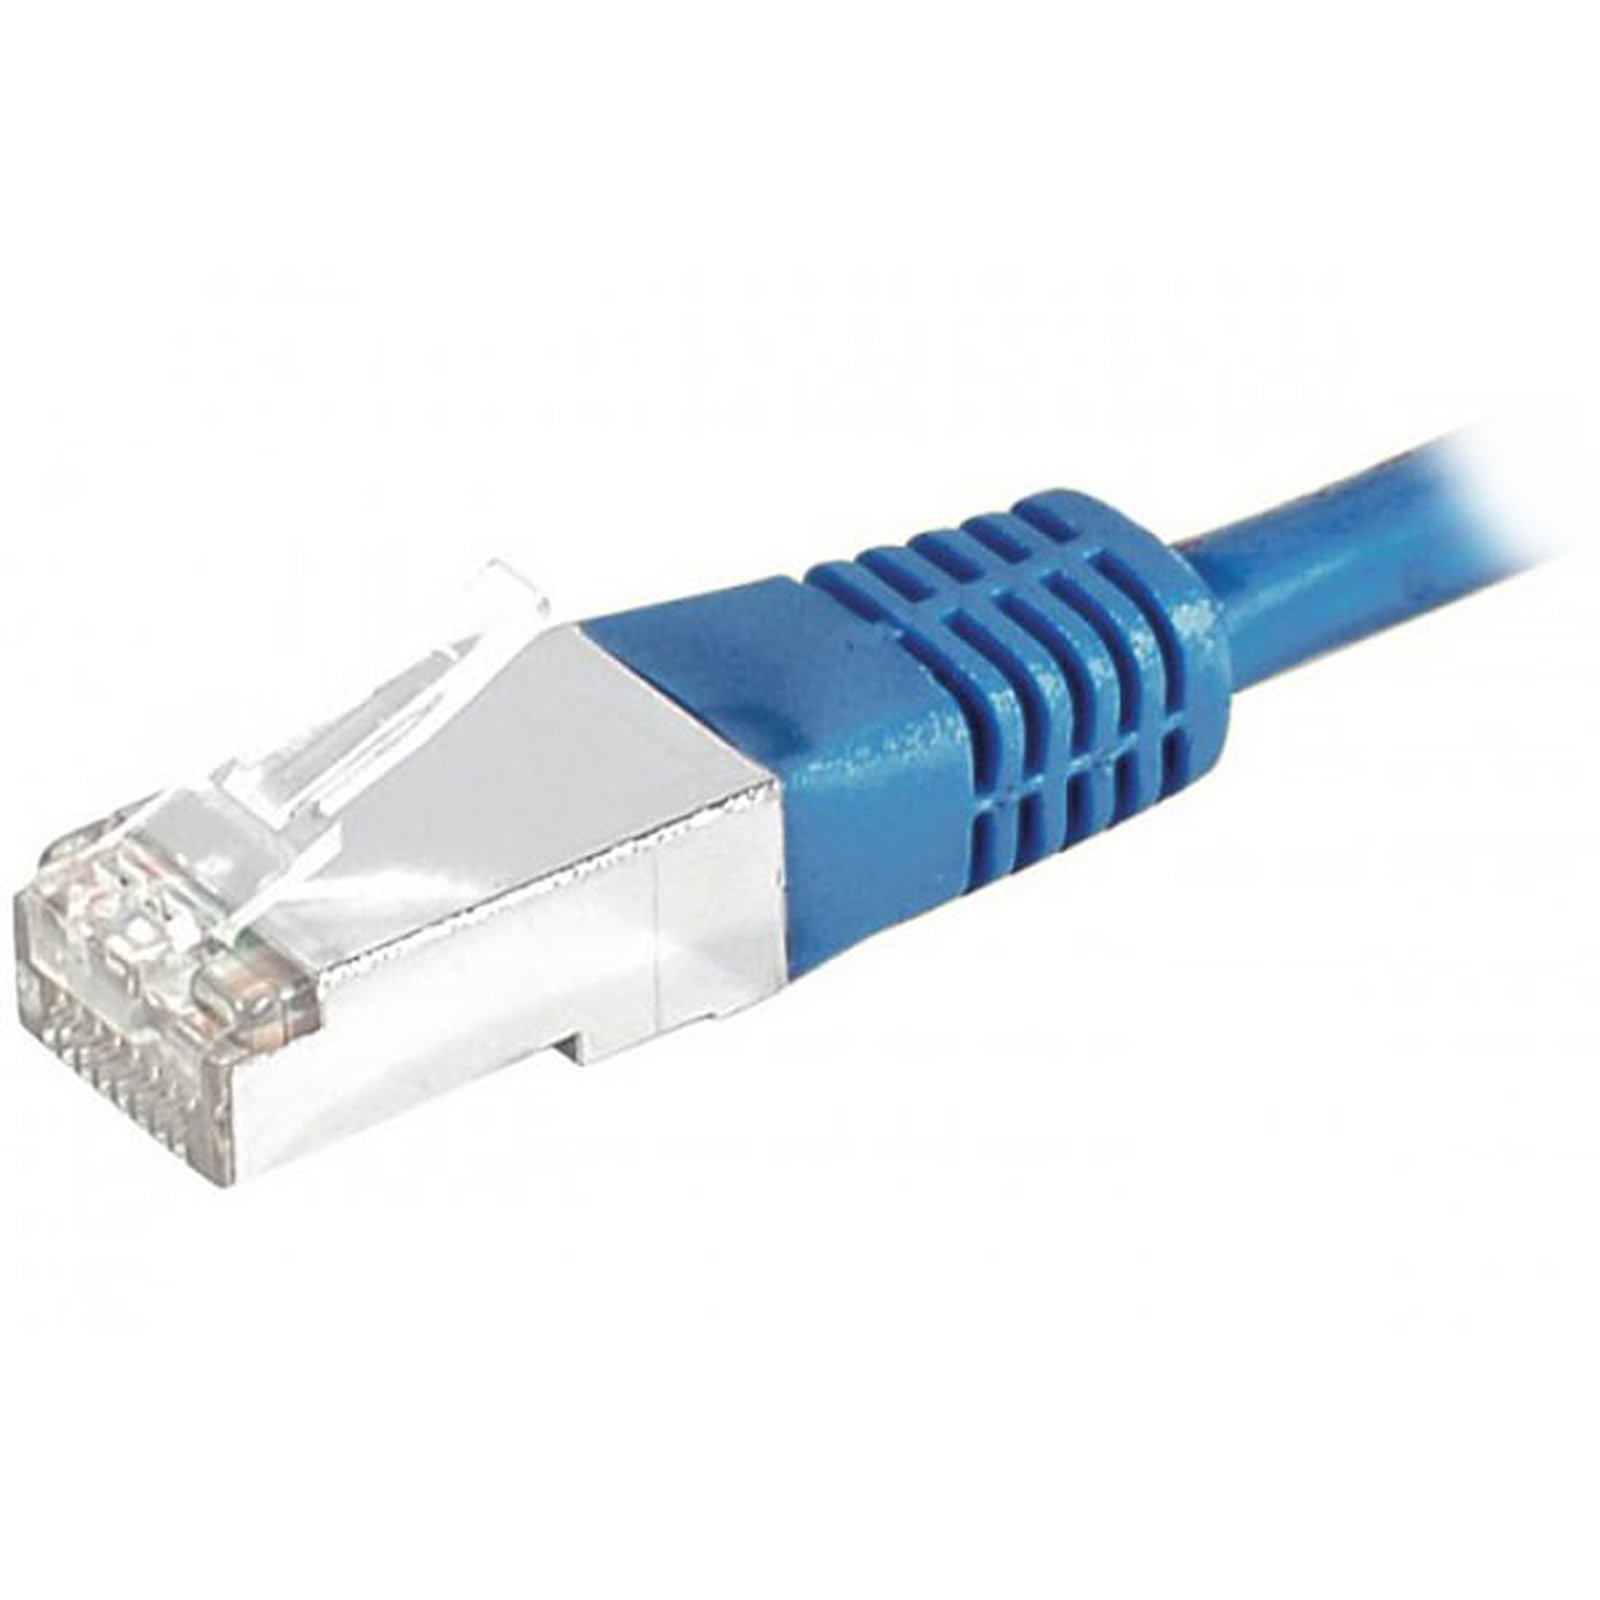 Cable RJ45 categorie 6 S/FTP 3 m (Bleu) - Cable RJ45 Generique